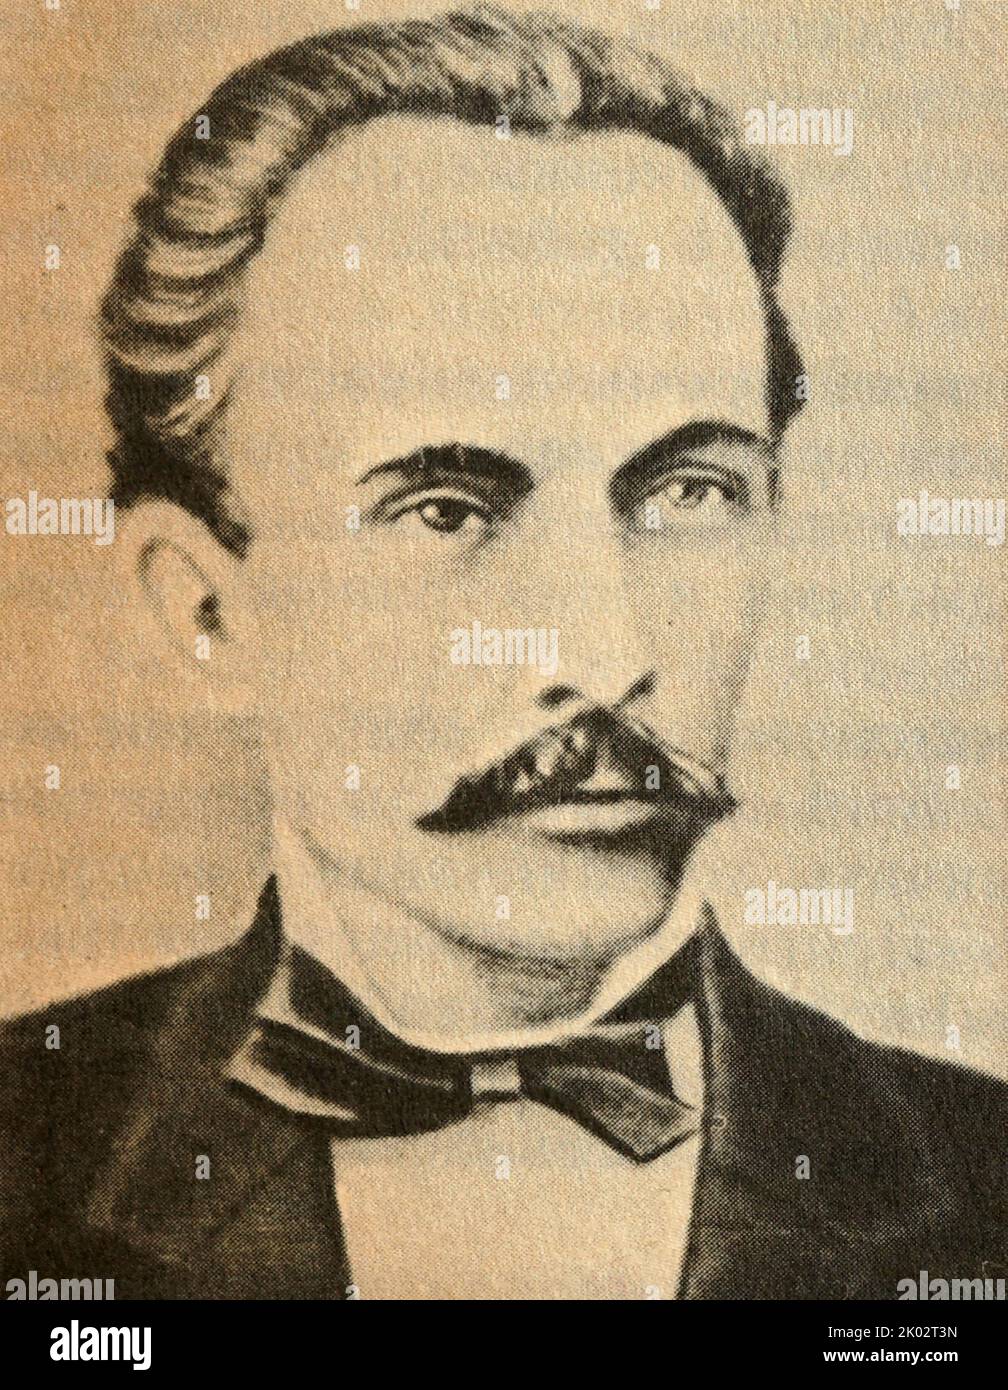 Dimitar Blagoev (1856-1924). Organizzatore di uno dei primi gruppi socialdemocratici in Russia. Leader della democrazia sociale rivoluzionaria bulgara e, più tardi, del Partito comunista bulgaro. Foto Stock